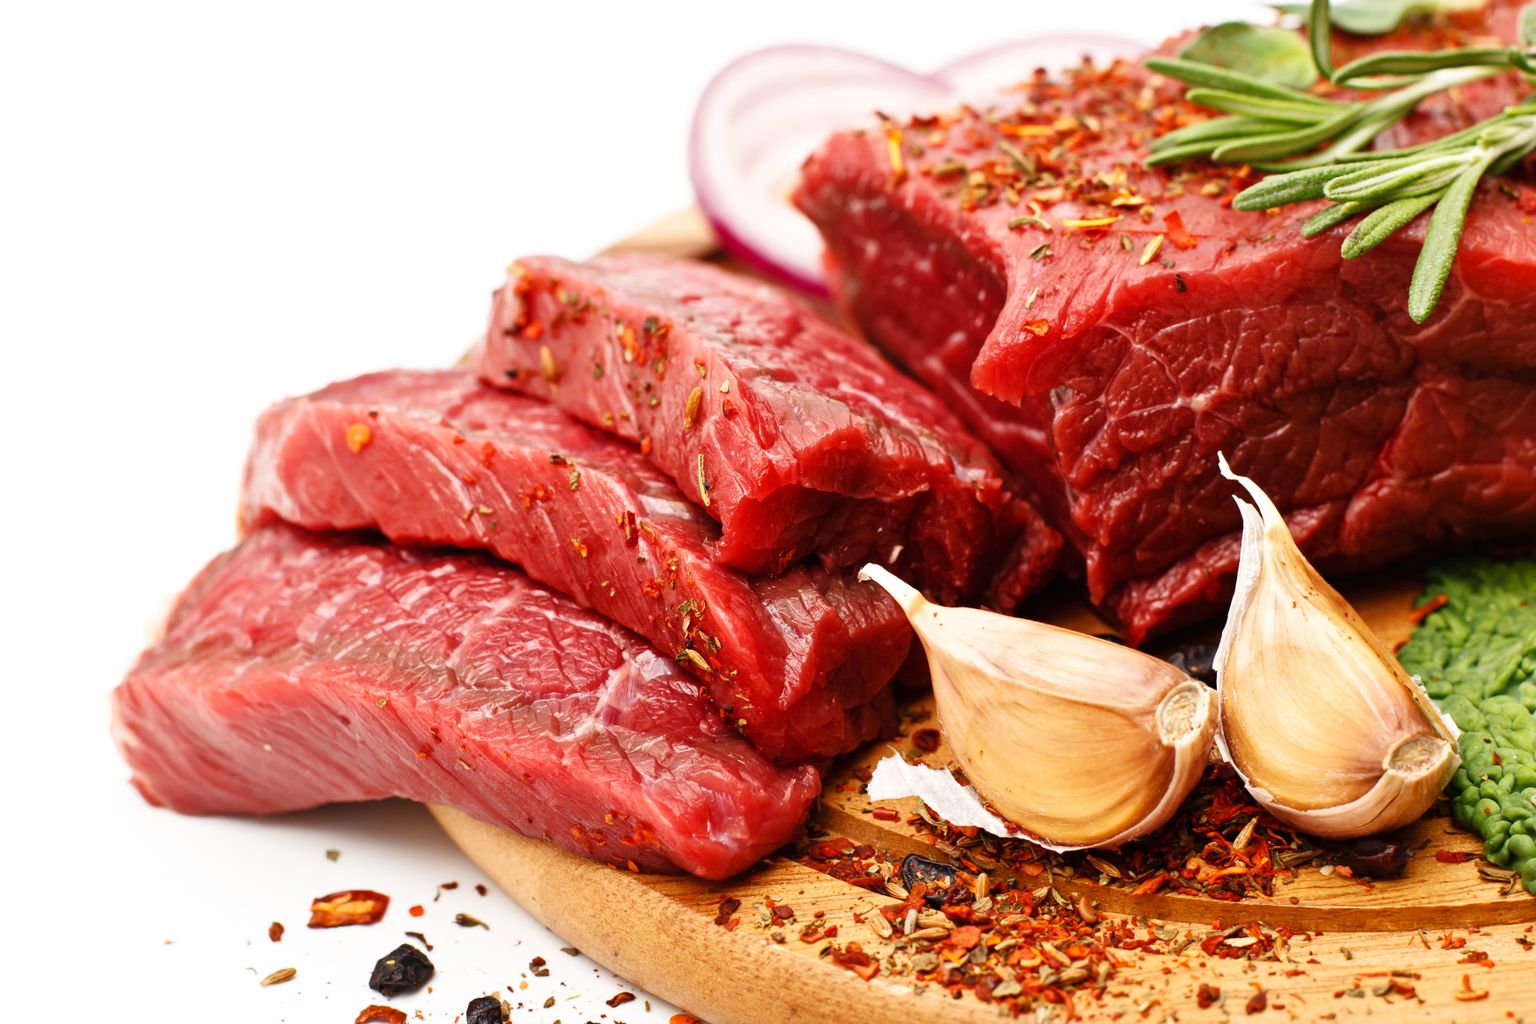 Красное мясо и чеснок - продукты, укорачивающие жизнь. Иллюстративное фото